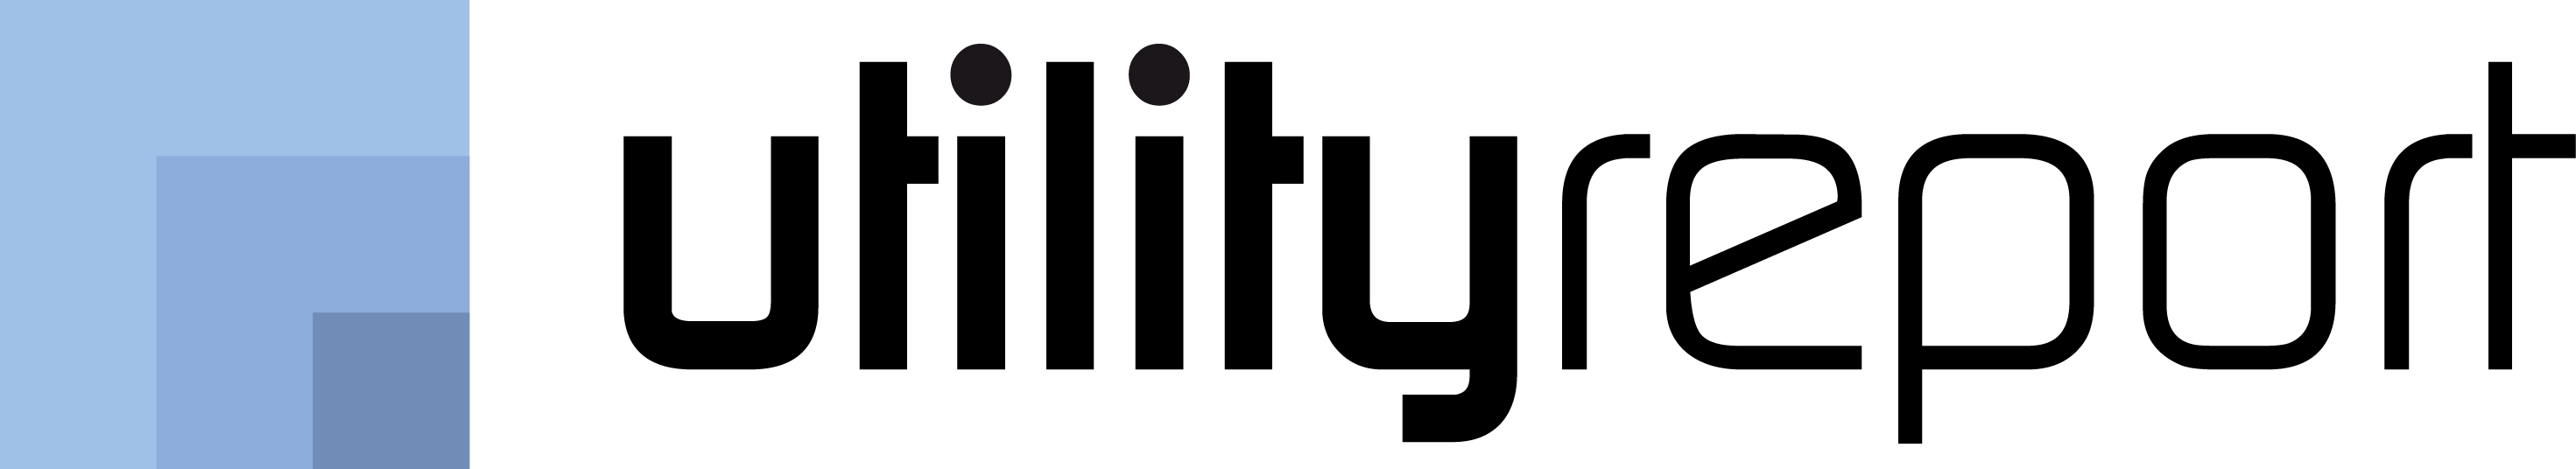 Logo utility